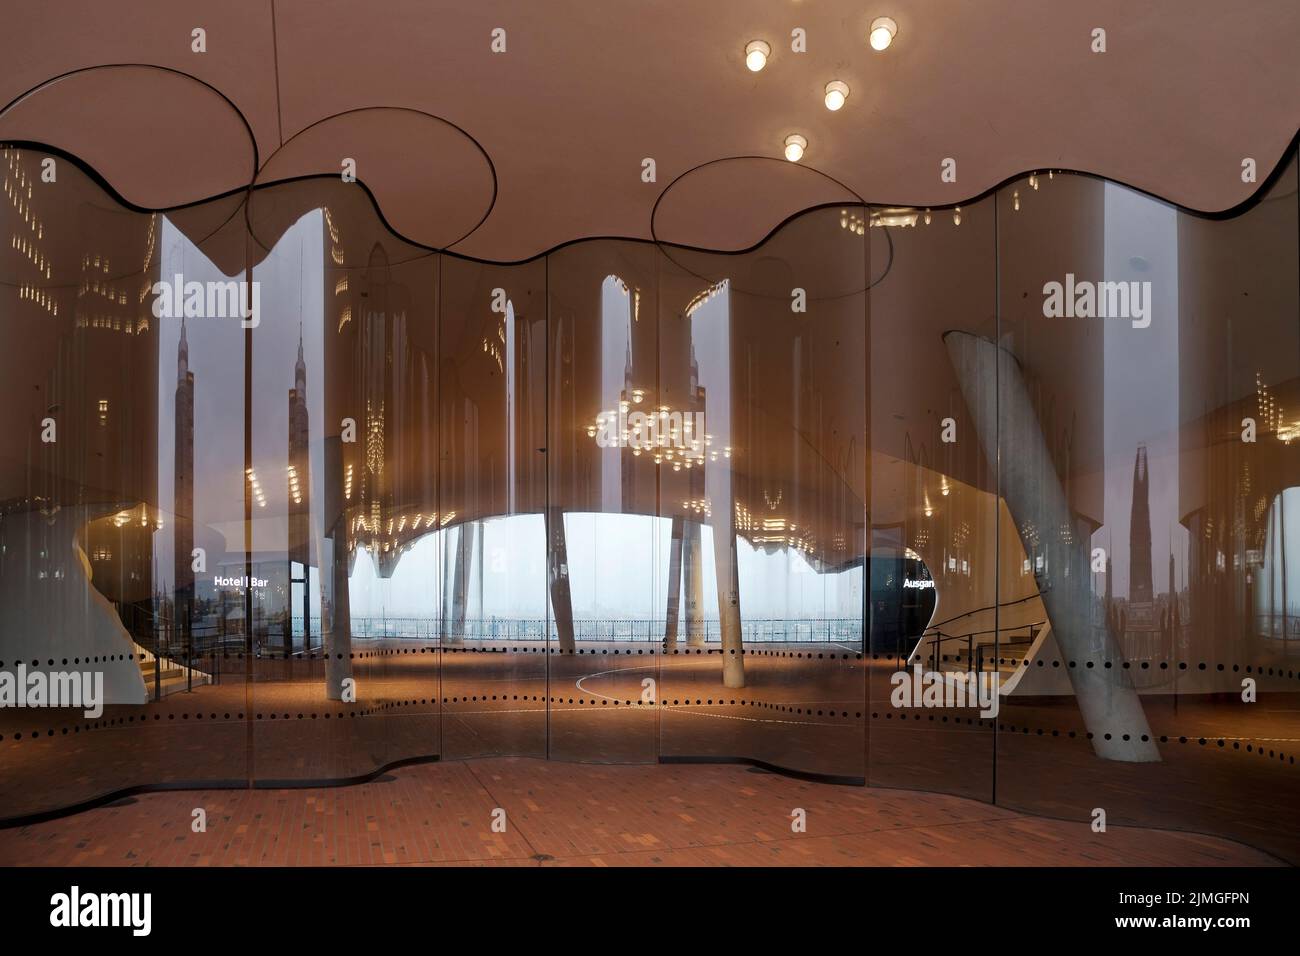 Piattaforma di osservazione pubblica Plaza con deflettori del vento in vetro ricurvi, Elbphilharmonie, Amburgo, Germania Foto Stock